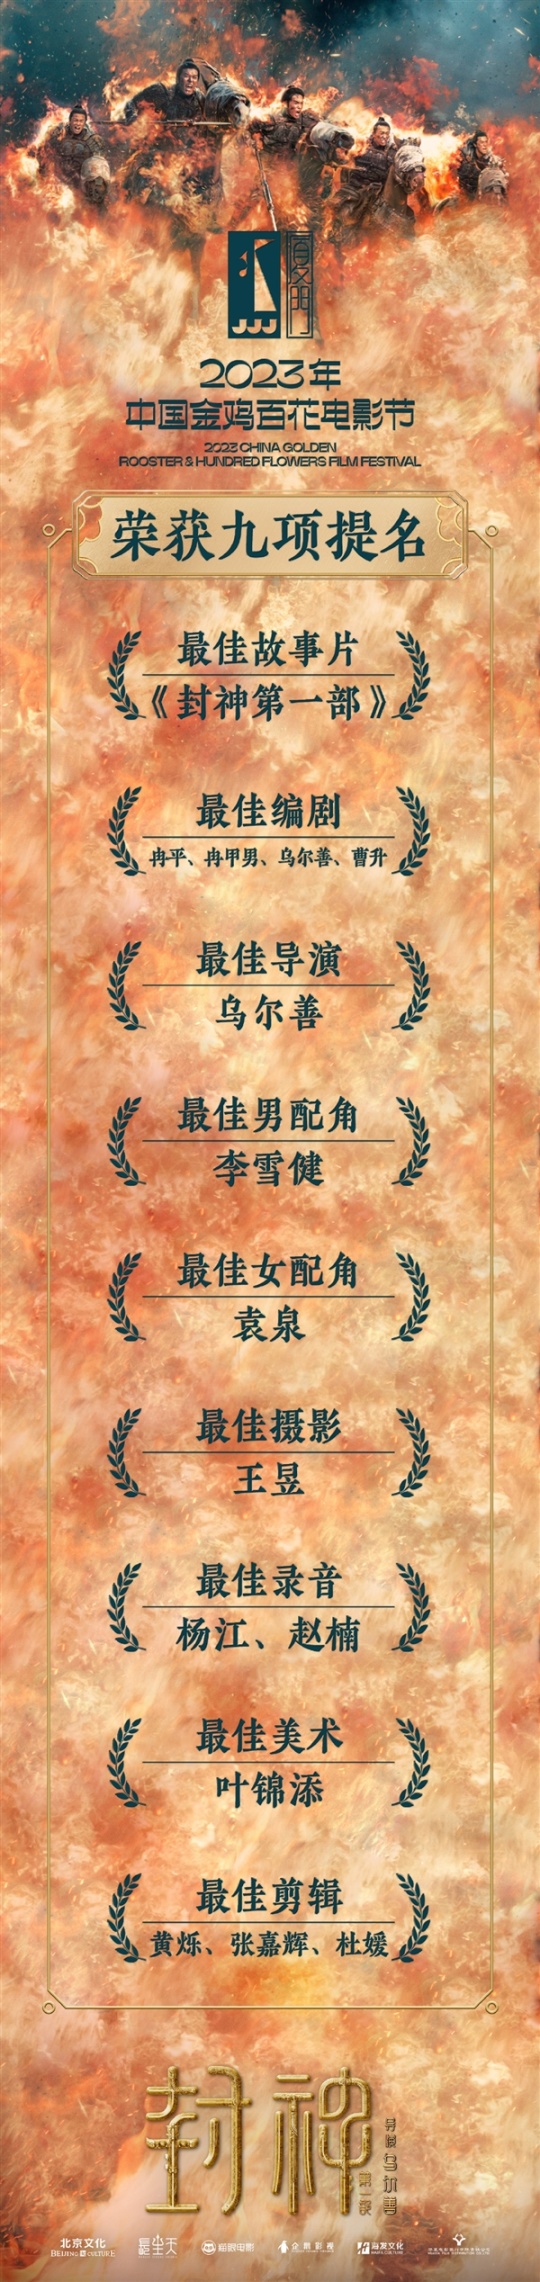 【影视动漫】第36届金鸡奖提名名单：封神真封神了 拿下9项提名-第1张